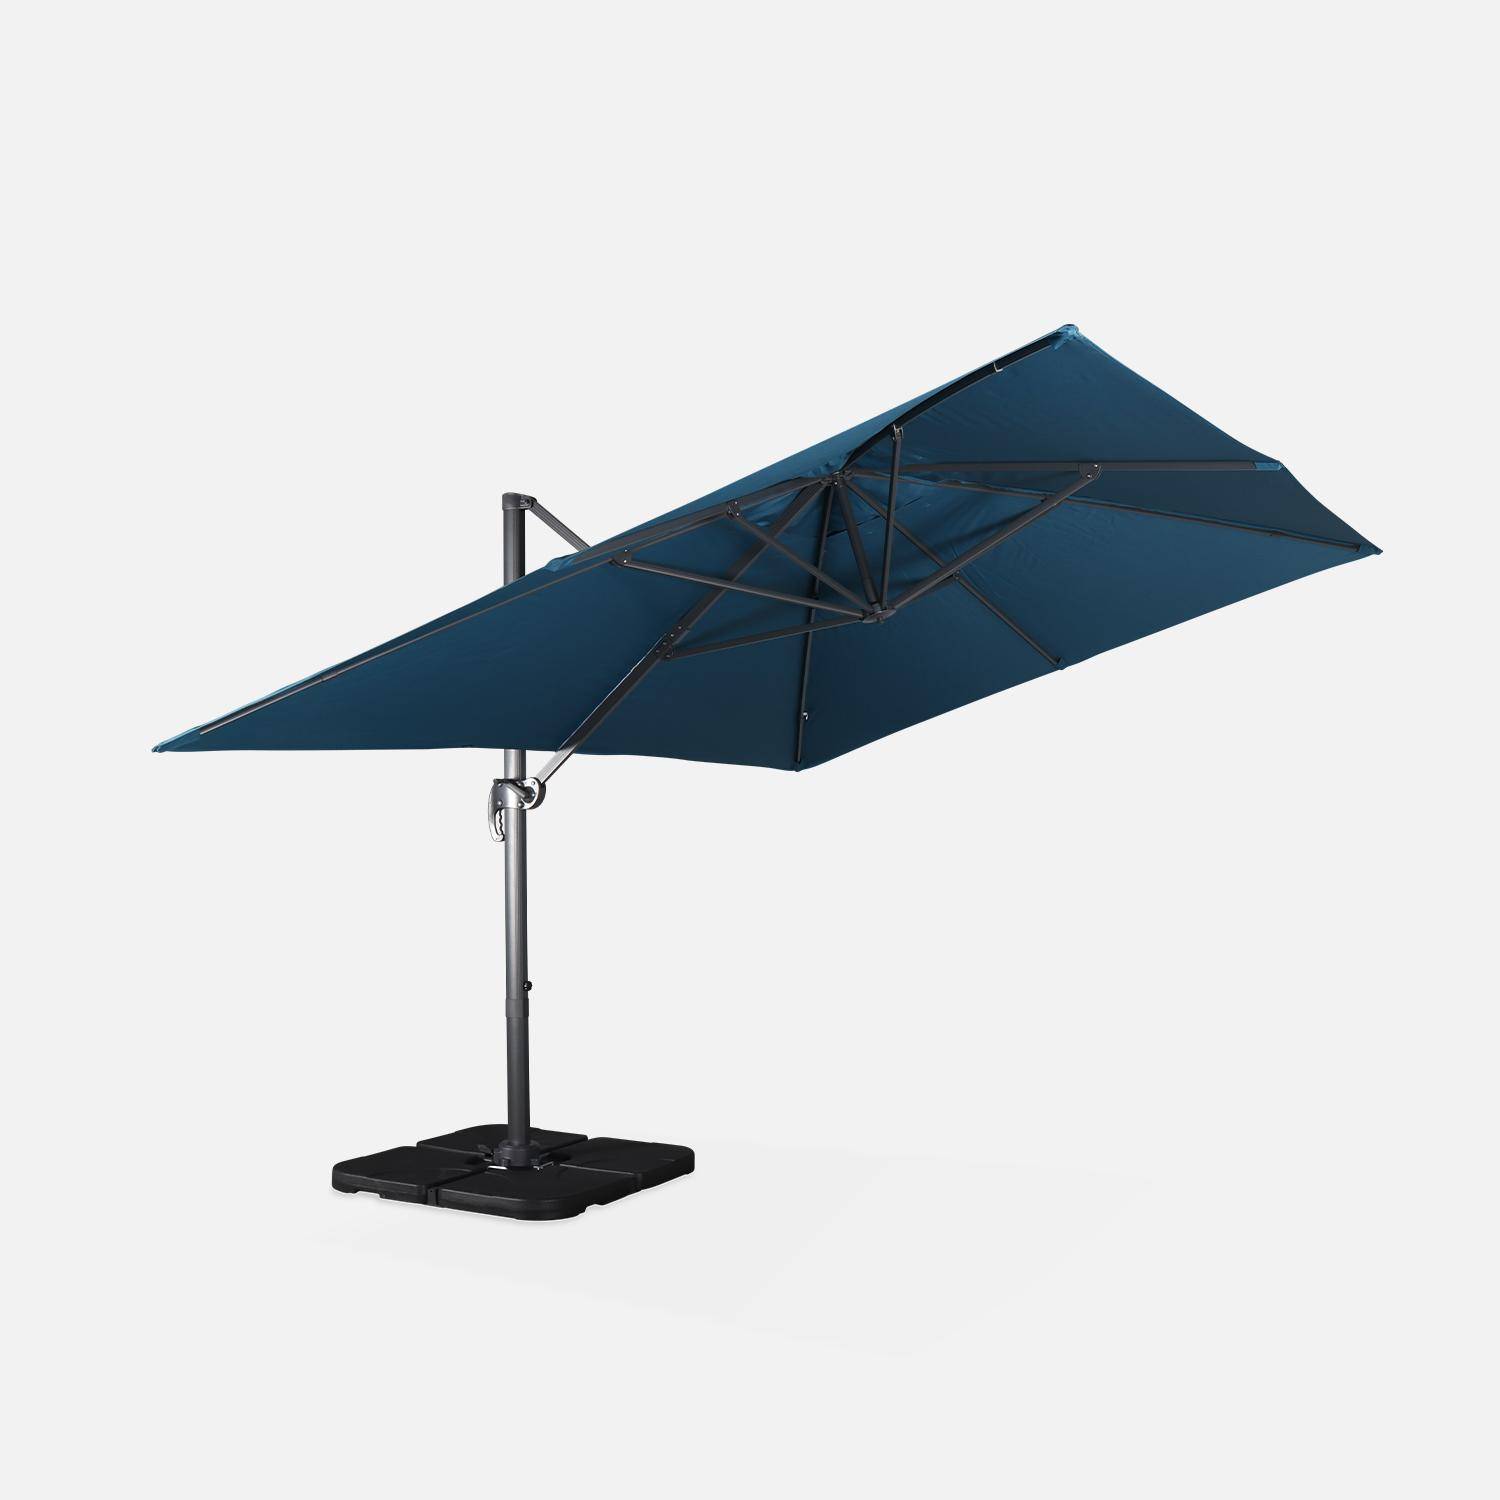 Eend blauwe rechthoekige parasol 3x4m + verzwaarde tegels 50x50cm,sweeek,Photo5